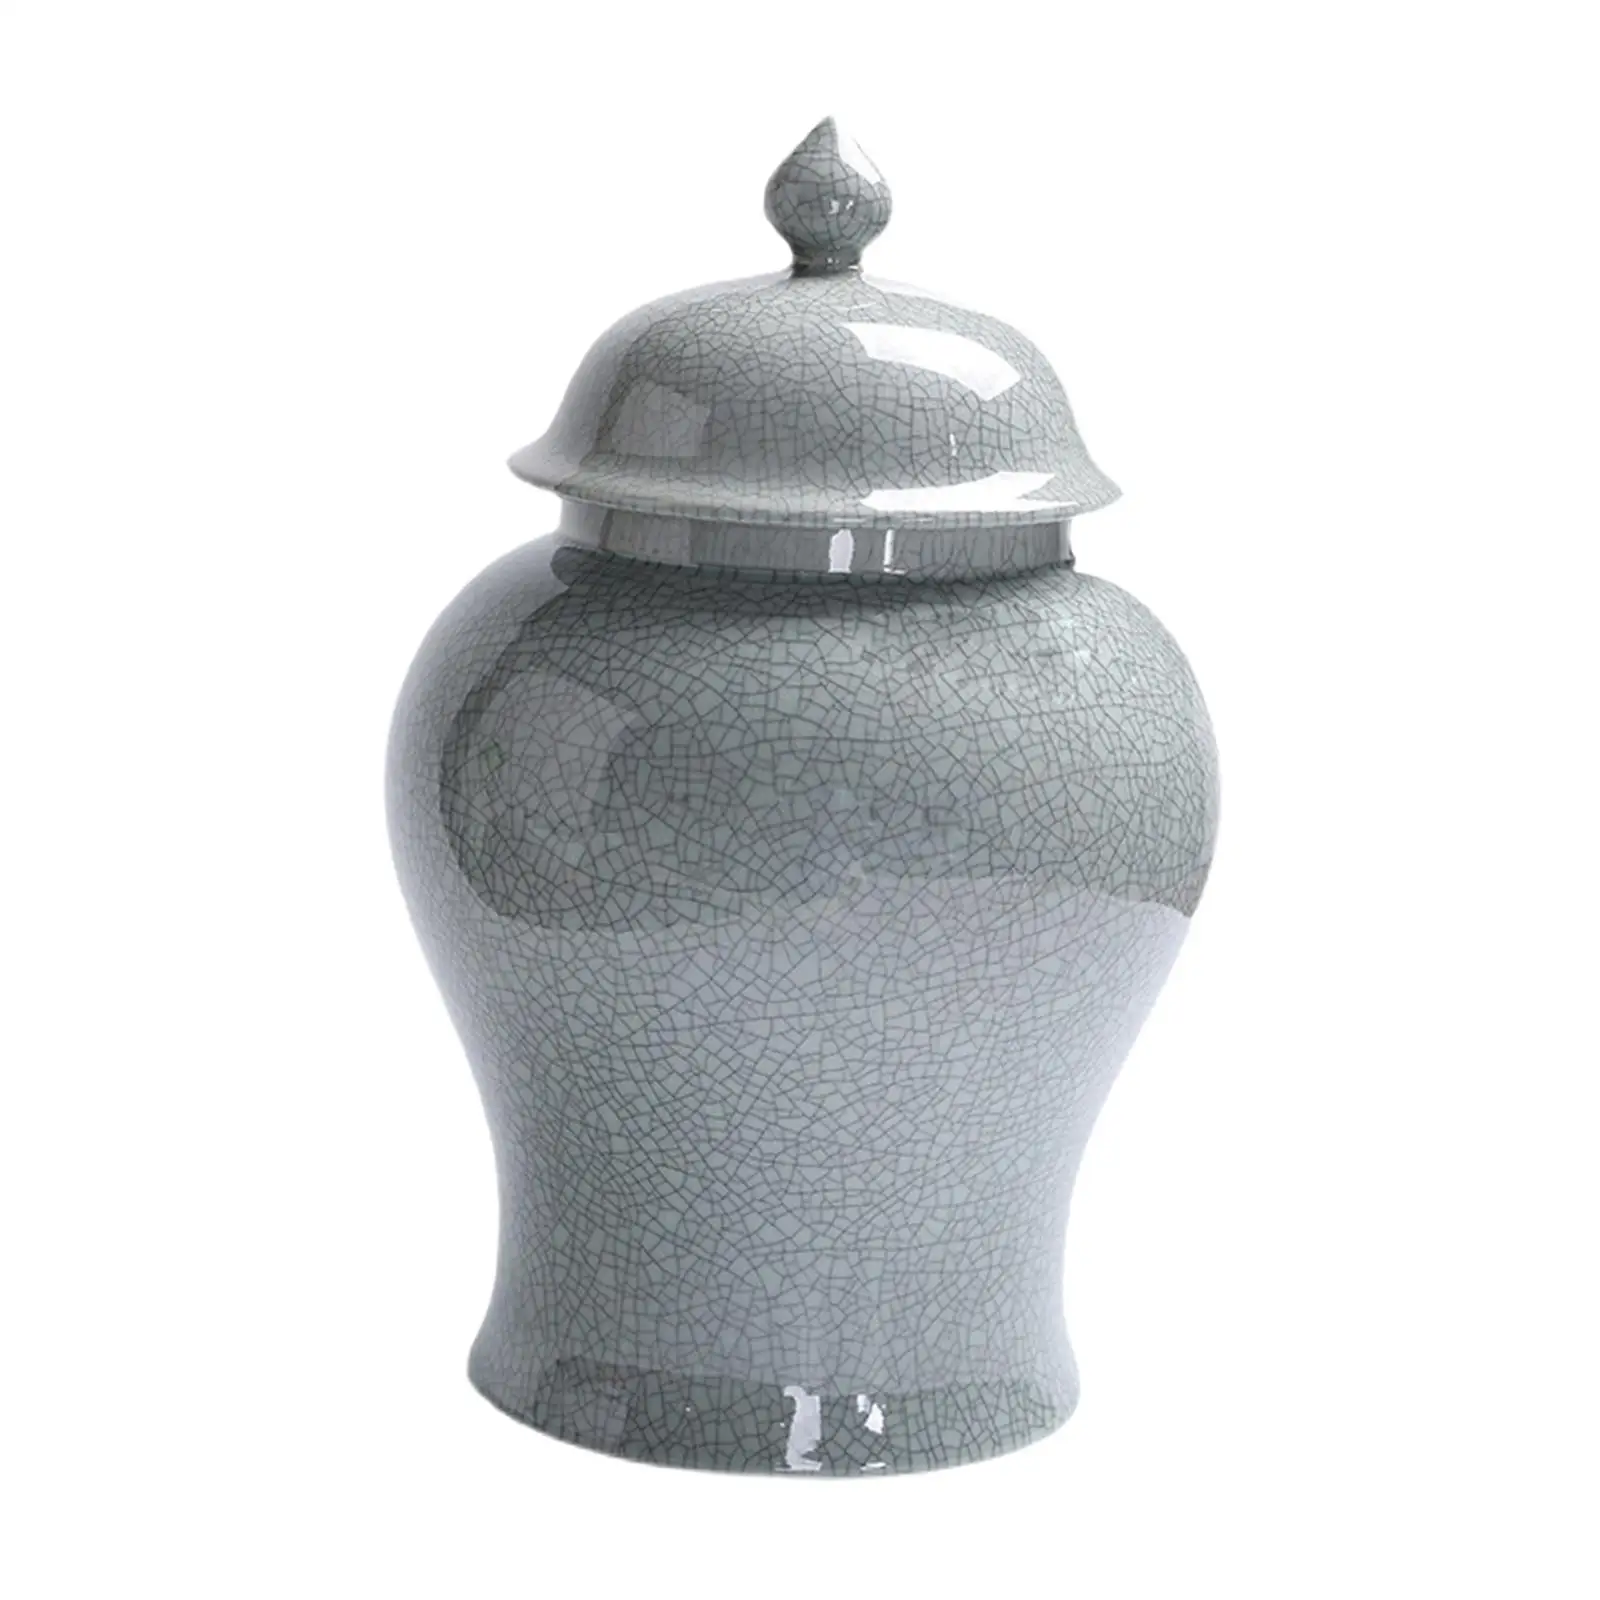 Chinese Ceramic Flower Vase Storage Bottle Handmade Ornament Porcelain Ginger Jar for Floral Arrangement Art Decor Tabletop